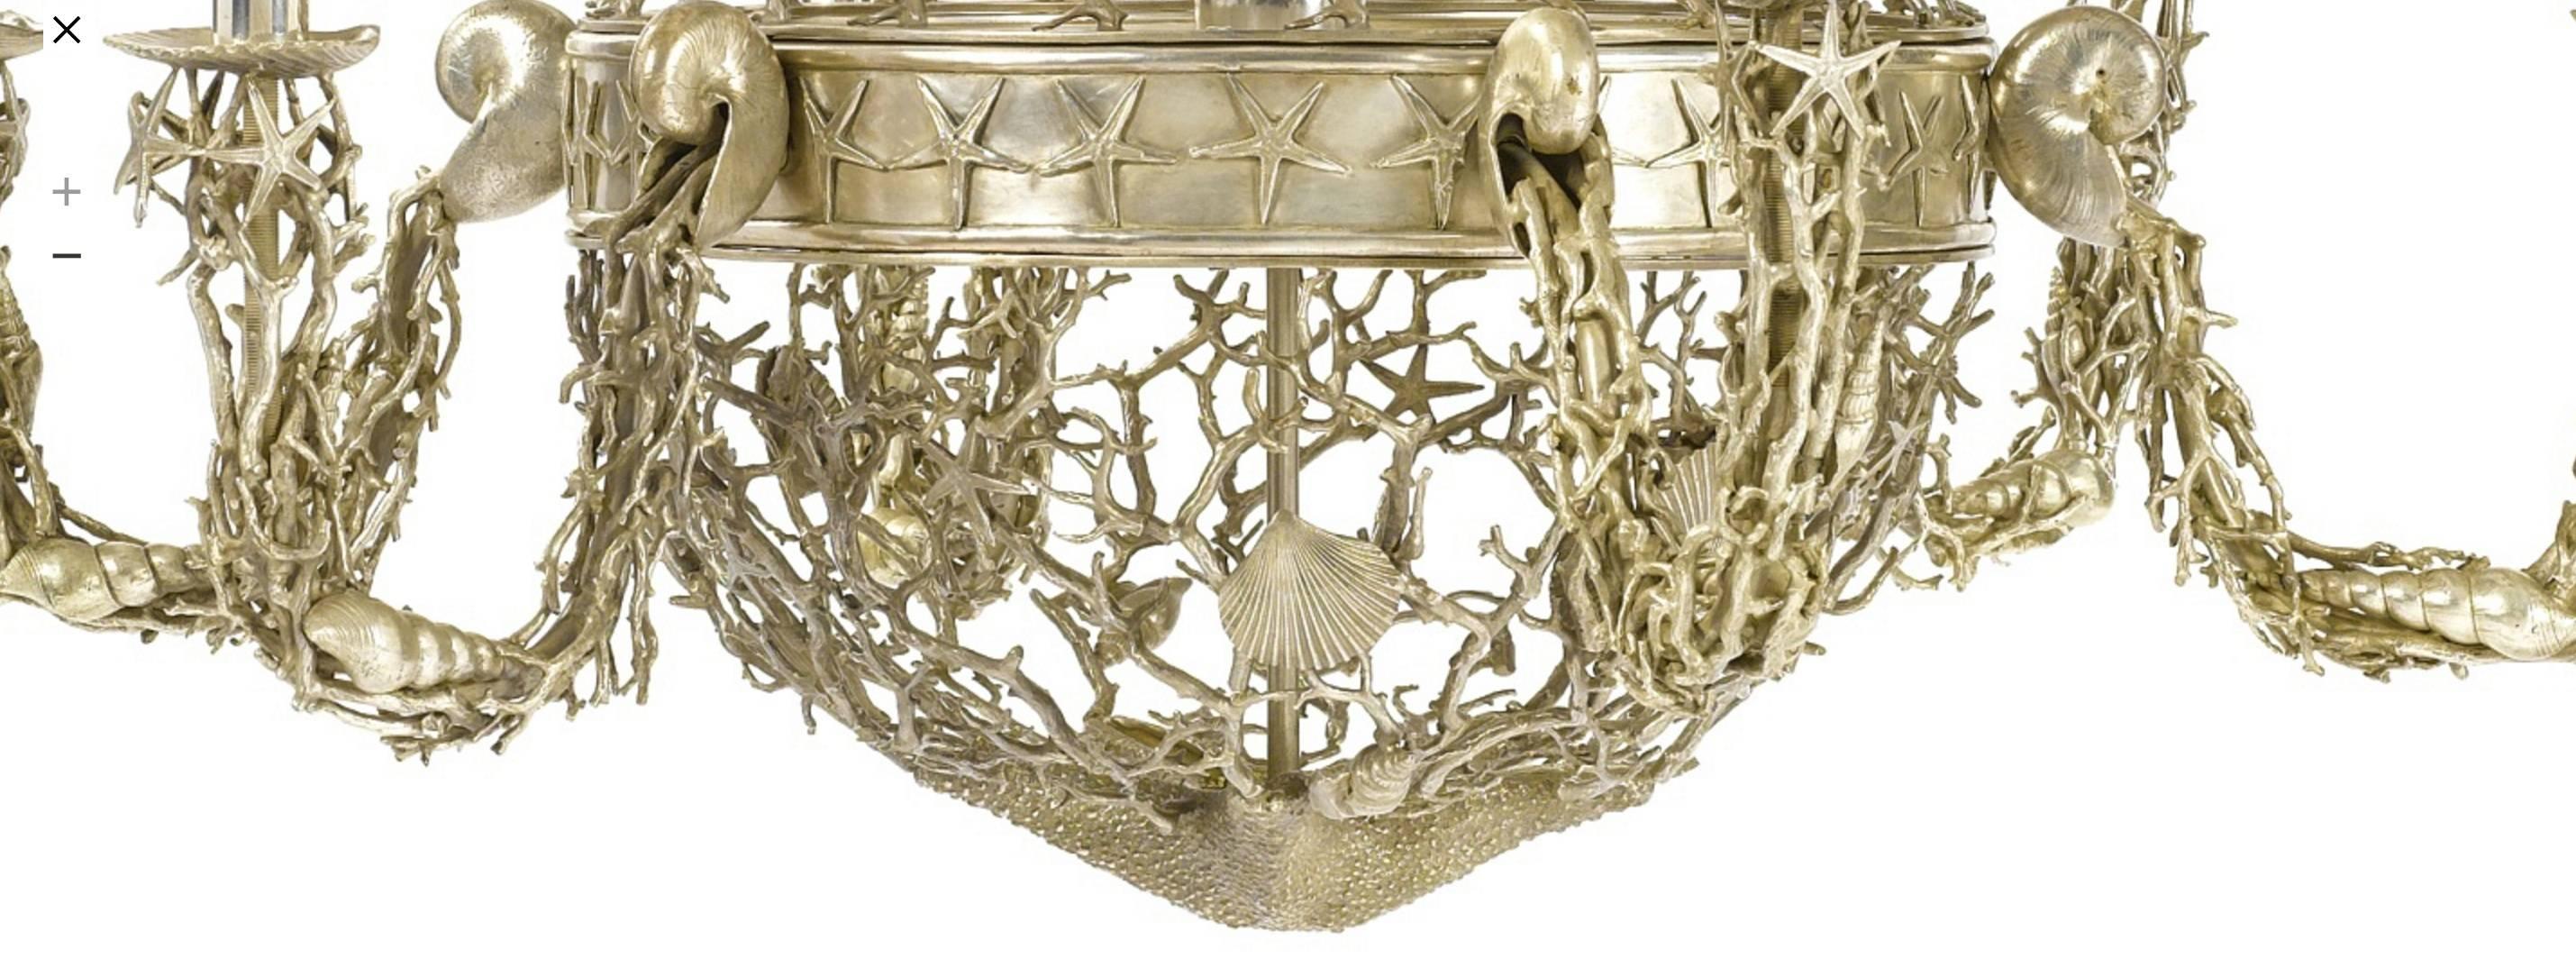 nautical chandeliers